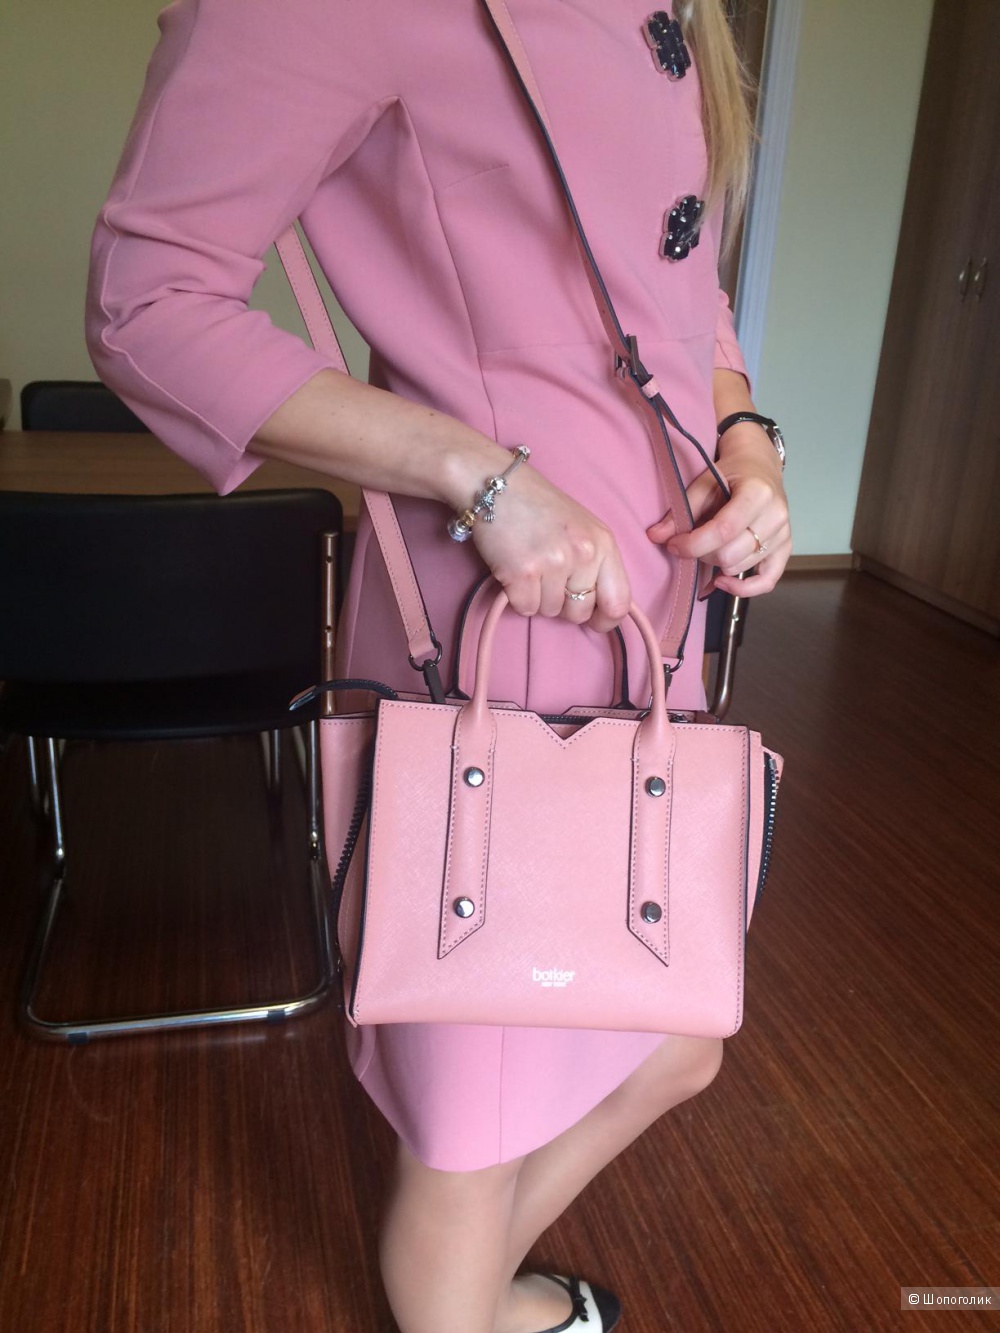 Миниатюрная объемная кожаная сумка с короткими ручками Botkier, цвет -розовая пудра (с отливом персика)